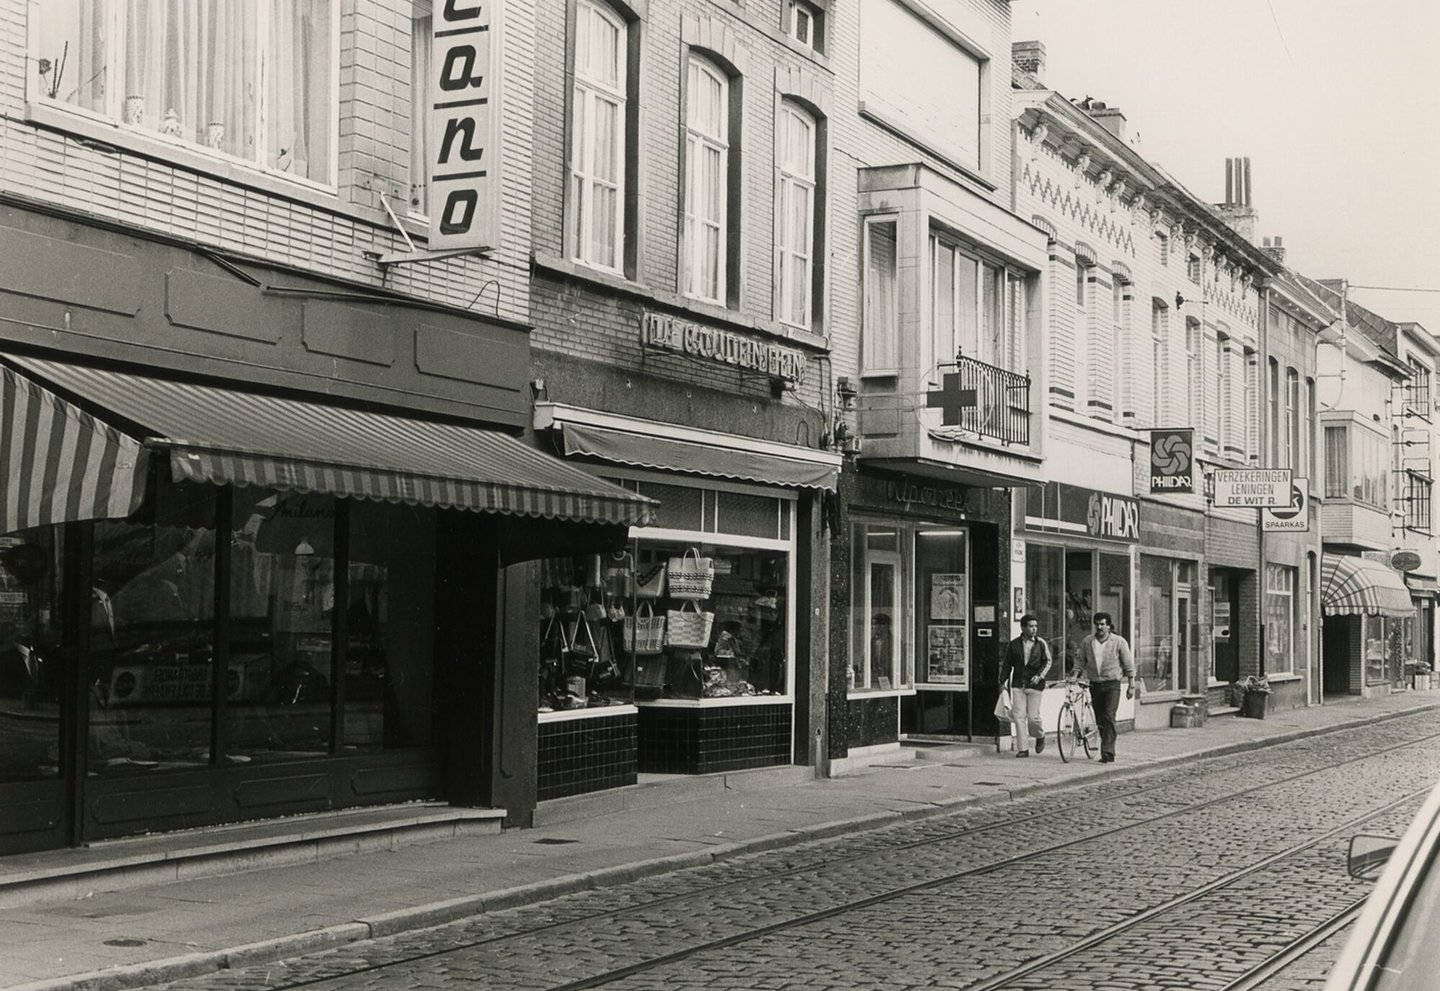 Straatbeeld met woningen en winkels in Gent